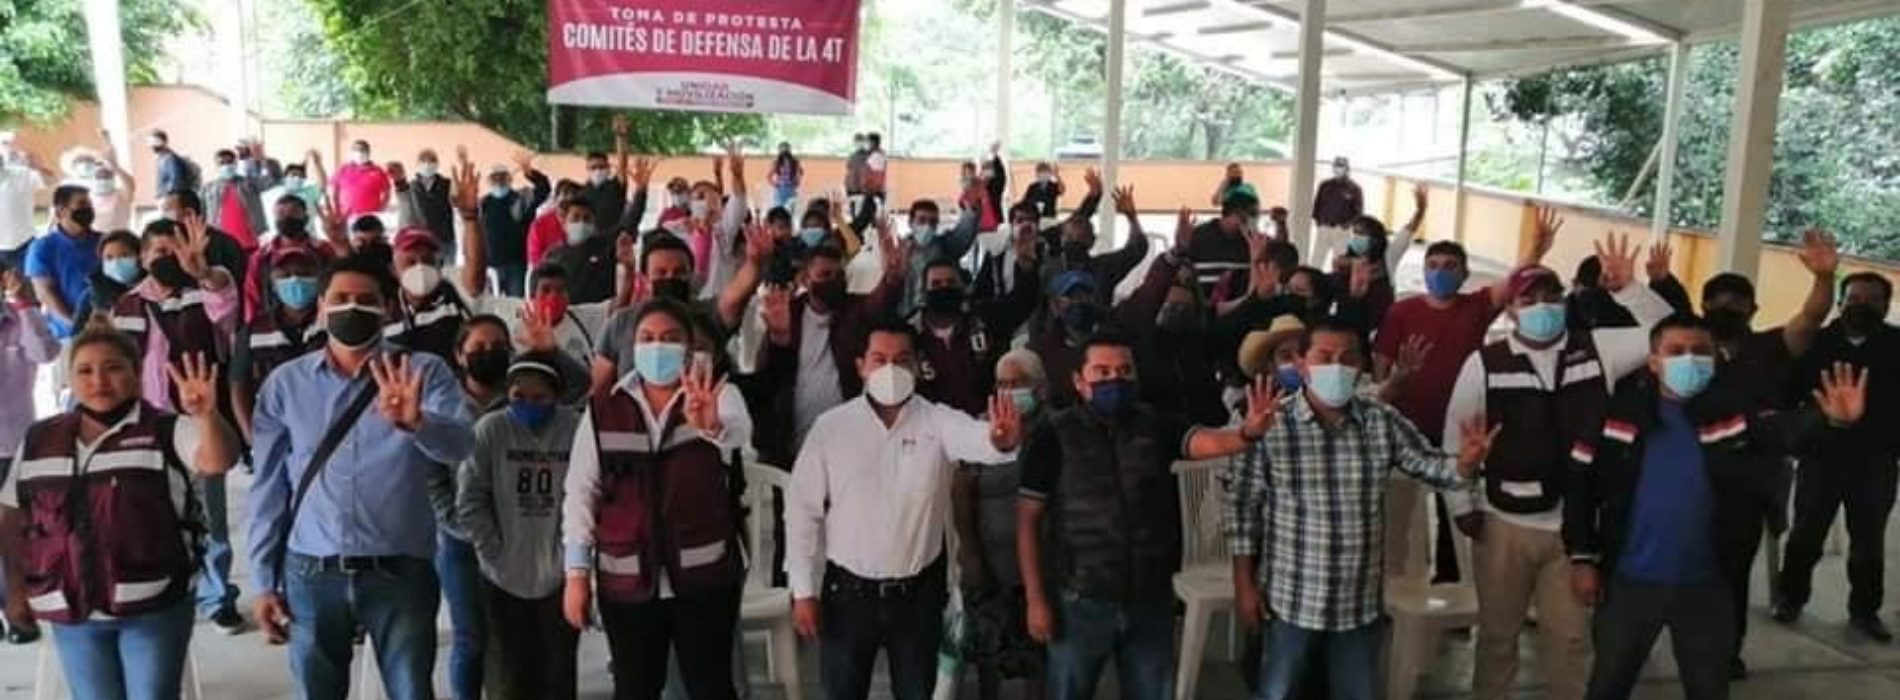 TOMAN PROTESTA A LOS COMITÉS DE DEFENSA DE LA 4TA. TRANSFORMACIÓN EN OAXACA